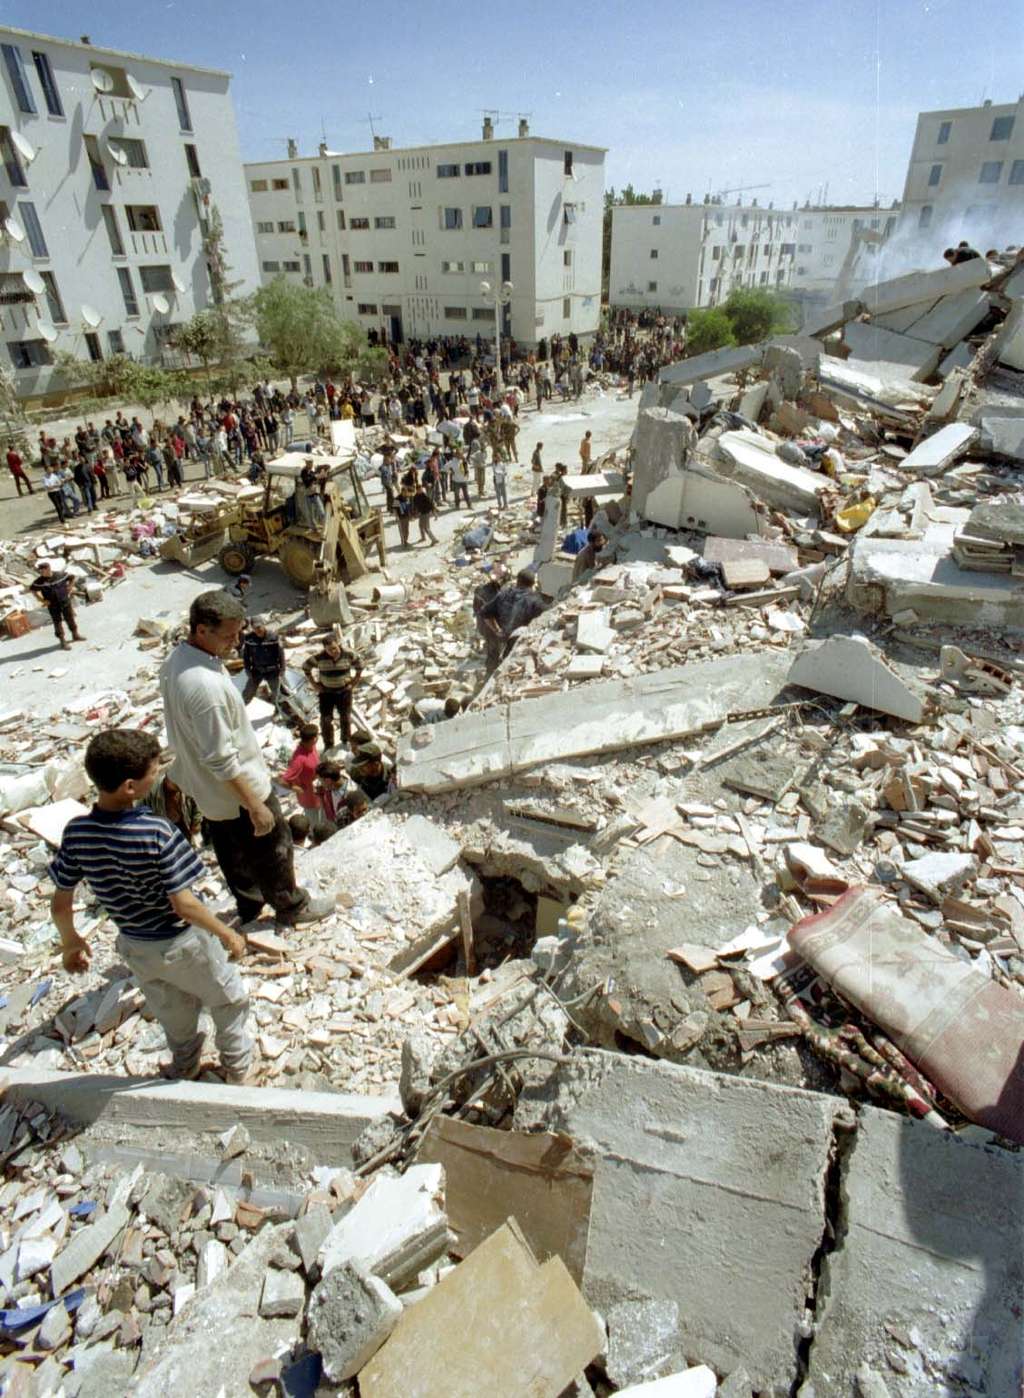 Destructions lors du séisme de Boumerdès en 2003 © Magharebia, Flickr cc by 2.0 